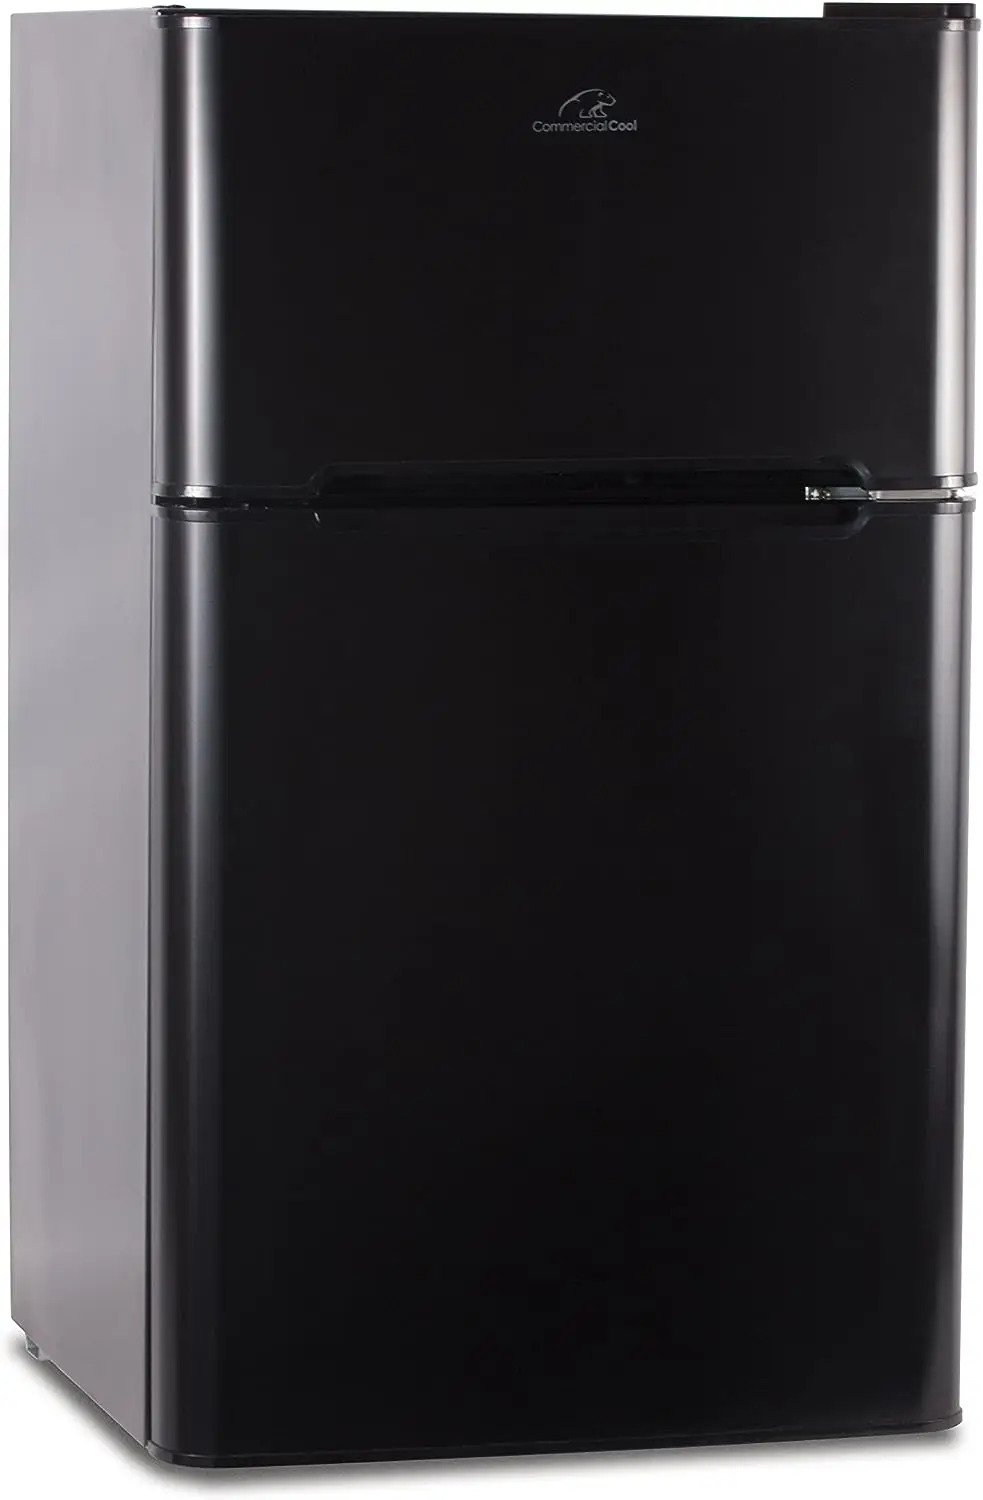 Király CCRD32B Kompakt Dupla ajtós Hűtőszekrény Igaz, Fagyasztó, 3.2 Cu. Ft. Mini Hűtőszekrény, Fekete